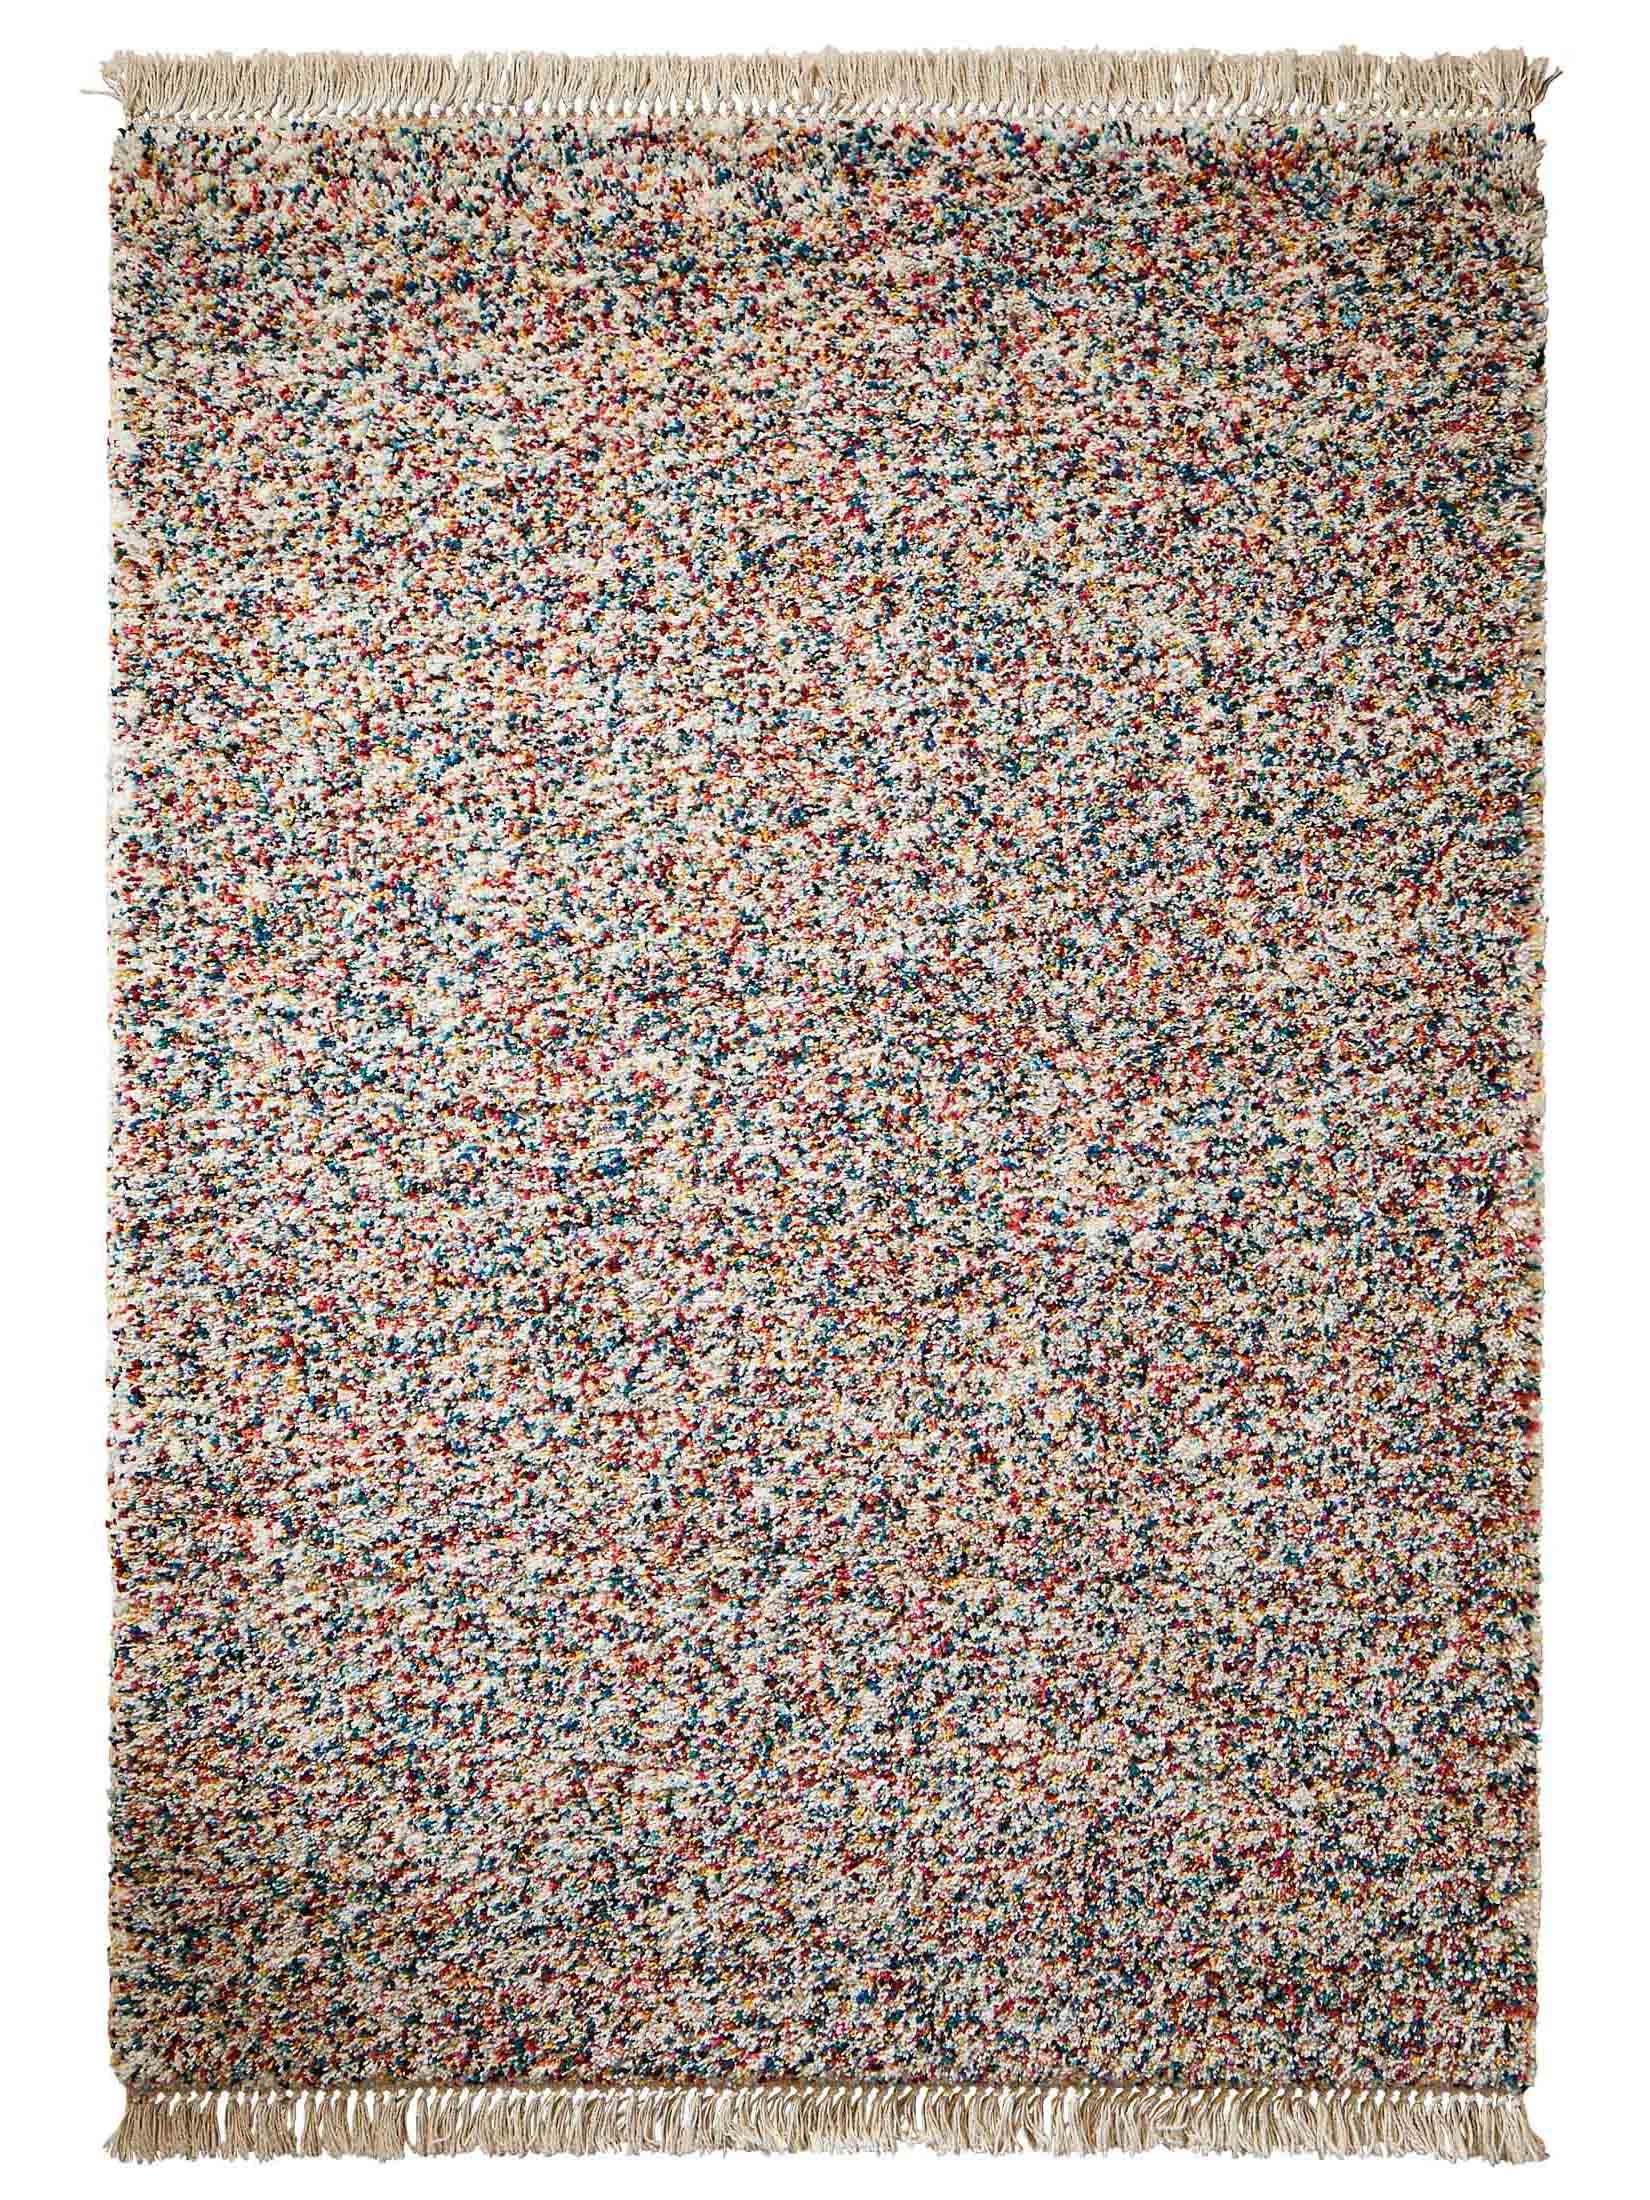 David Hochflor Teppichboden, mit Komfortrücken, 400cm Breite & Raummaß, Sand, Mustermaterial